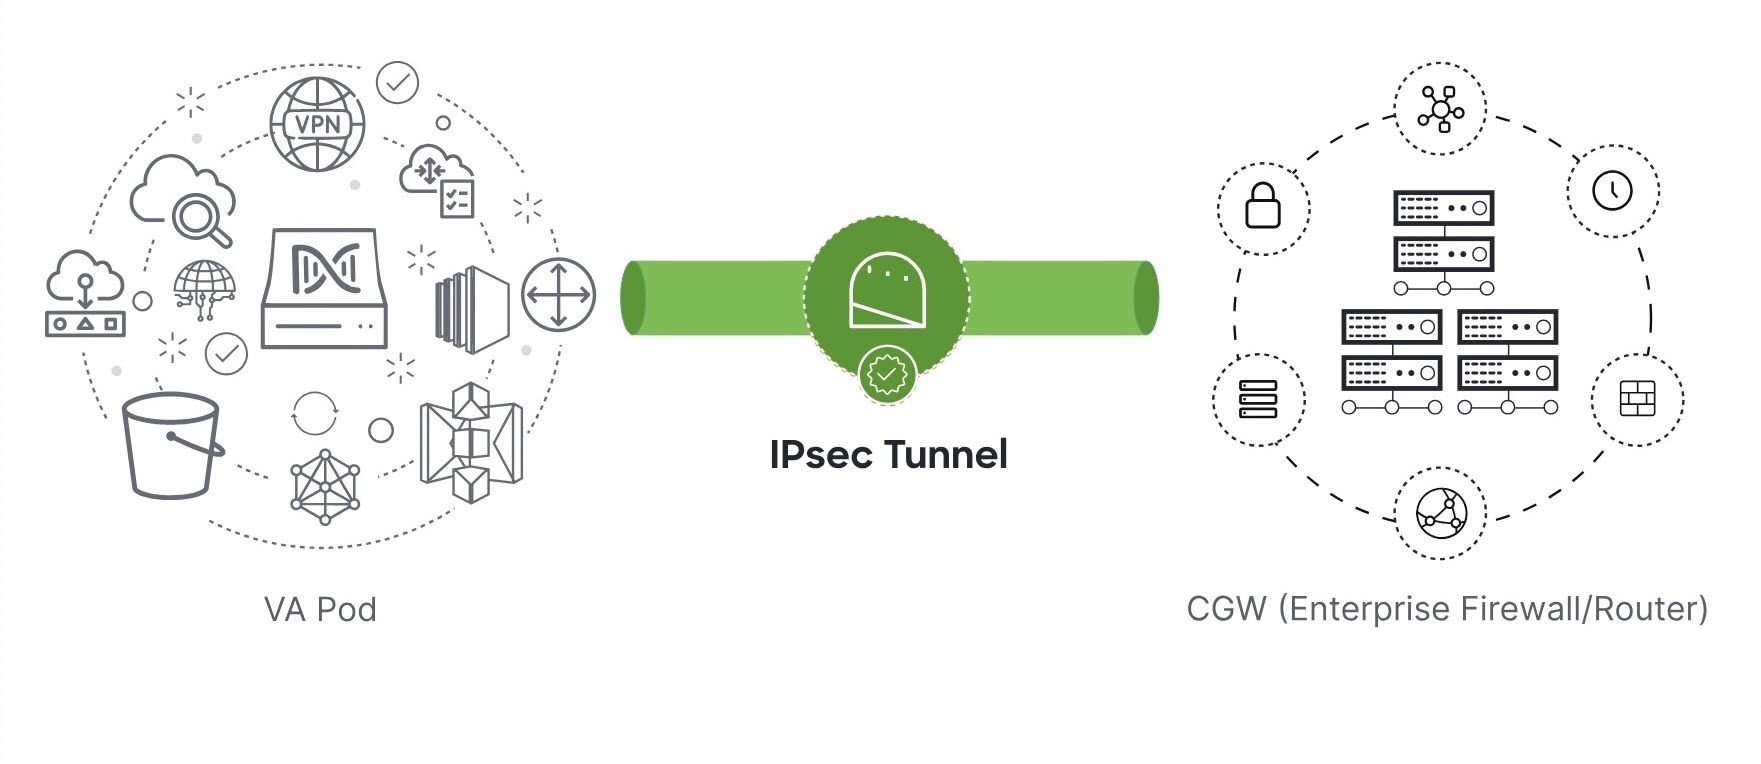 VA ポッドとエンタープライズ ファイアウォールまたはルータを接続する IPsec トンネルは、稼働中であることを意味する緑色になっています。